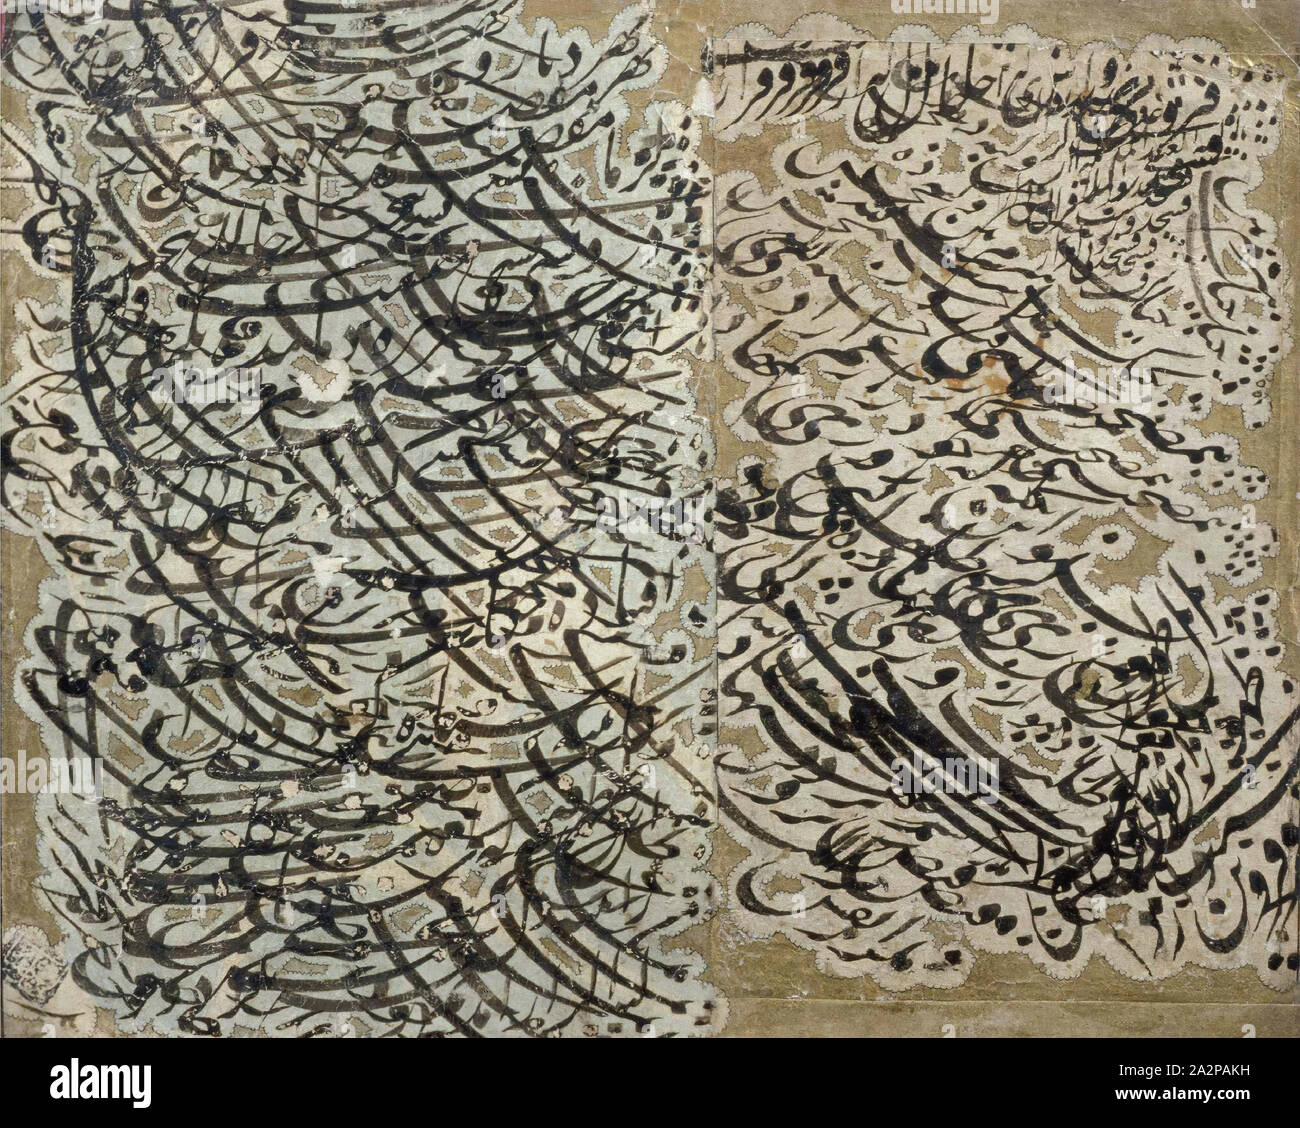 L'Iran islamique, la calligraphie, l'exercice, 18e/19e siècle, encre et d'or sur papier Banque D'Images